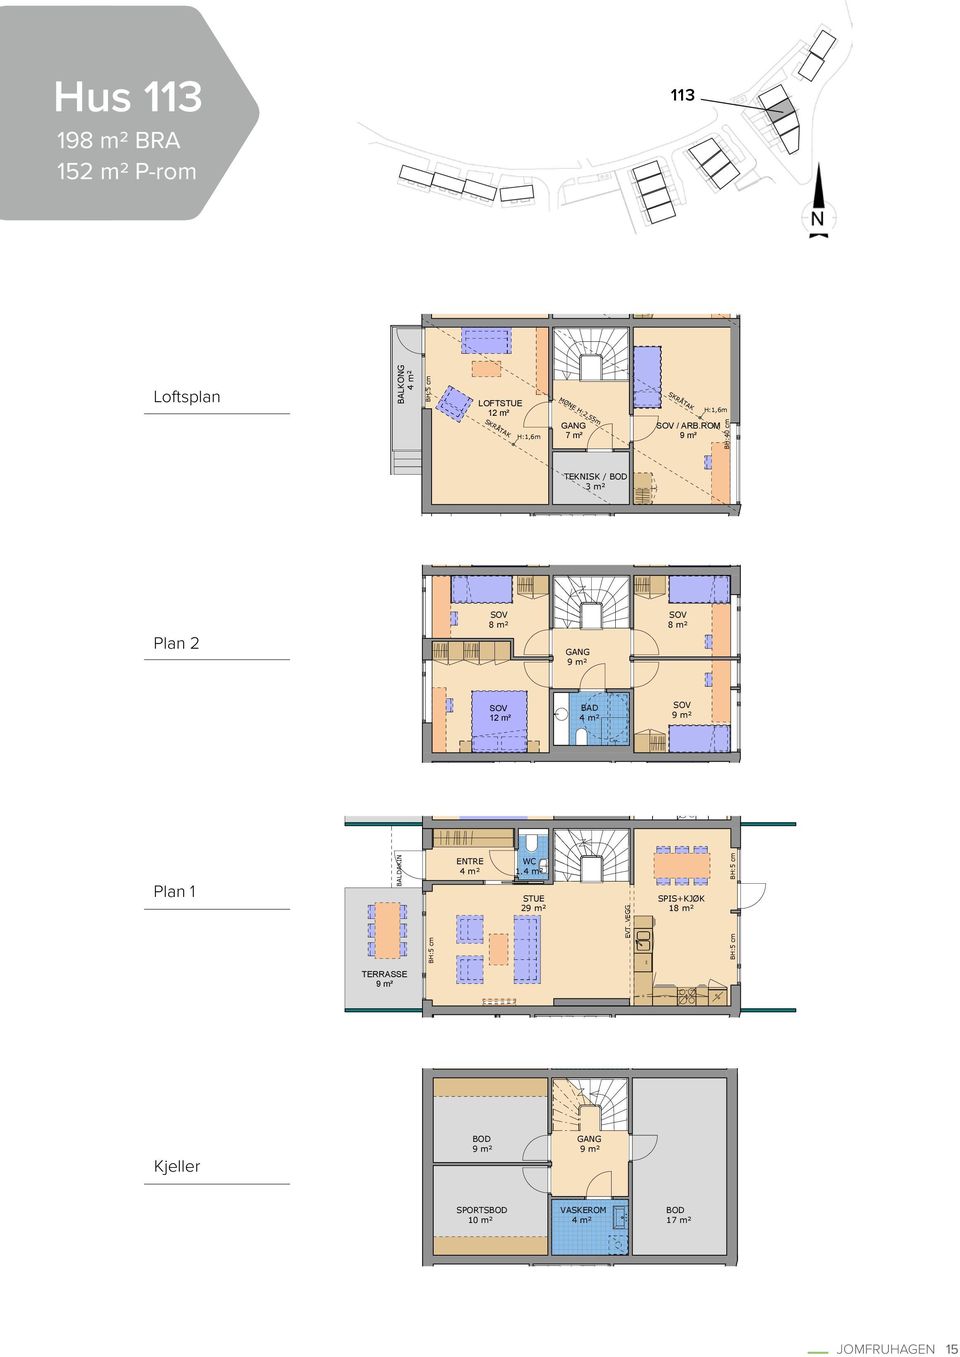 ROM 9 m² BH:40 cm TEKNISK / BOD 3 m² Plan 2 SOV 8 m² GANG 9 m² SOV 8 m² SOV 12 m² BAD 4 m² SOV 9 m²